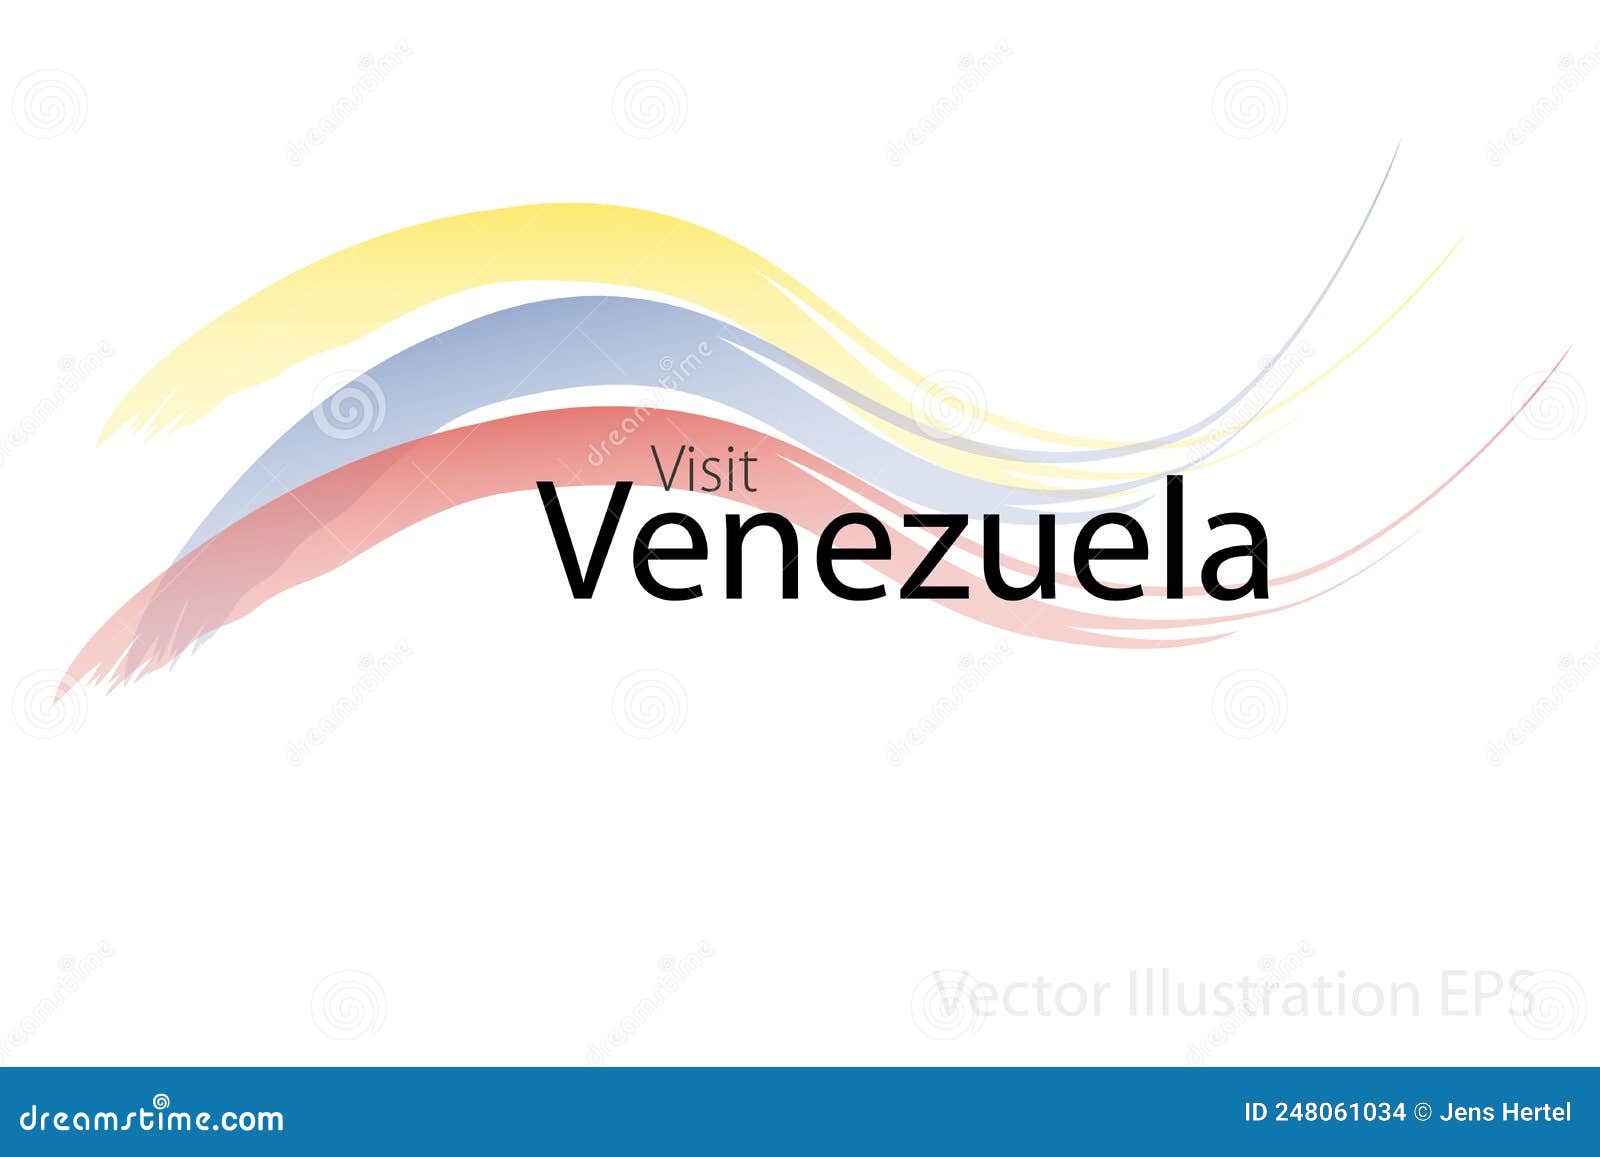 venezuela tourism logo